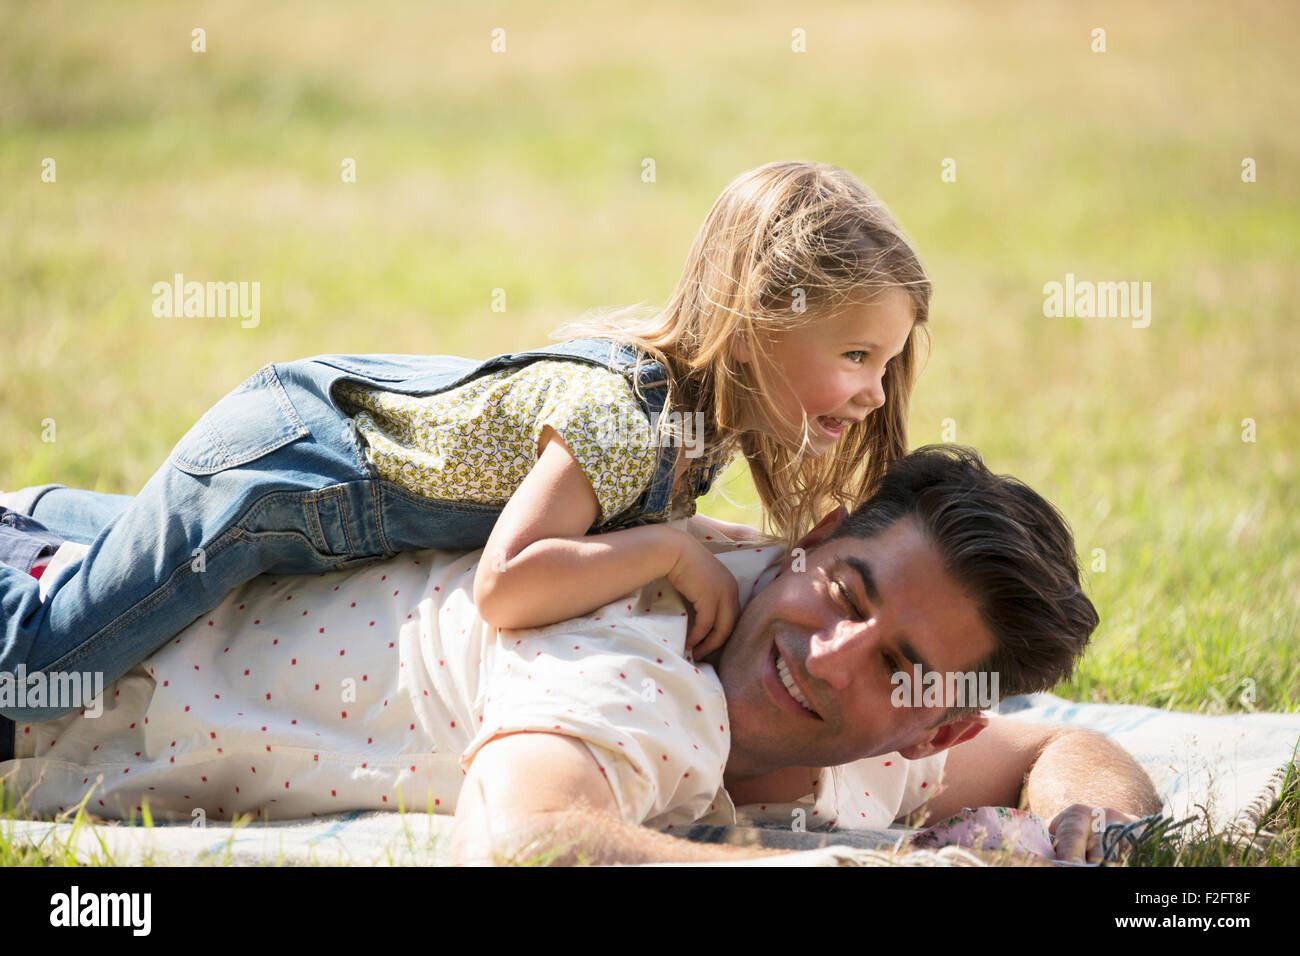 Giocoso figlia recante sulla sommità del padre nel campo soleggiato Foto Stock